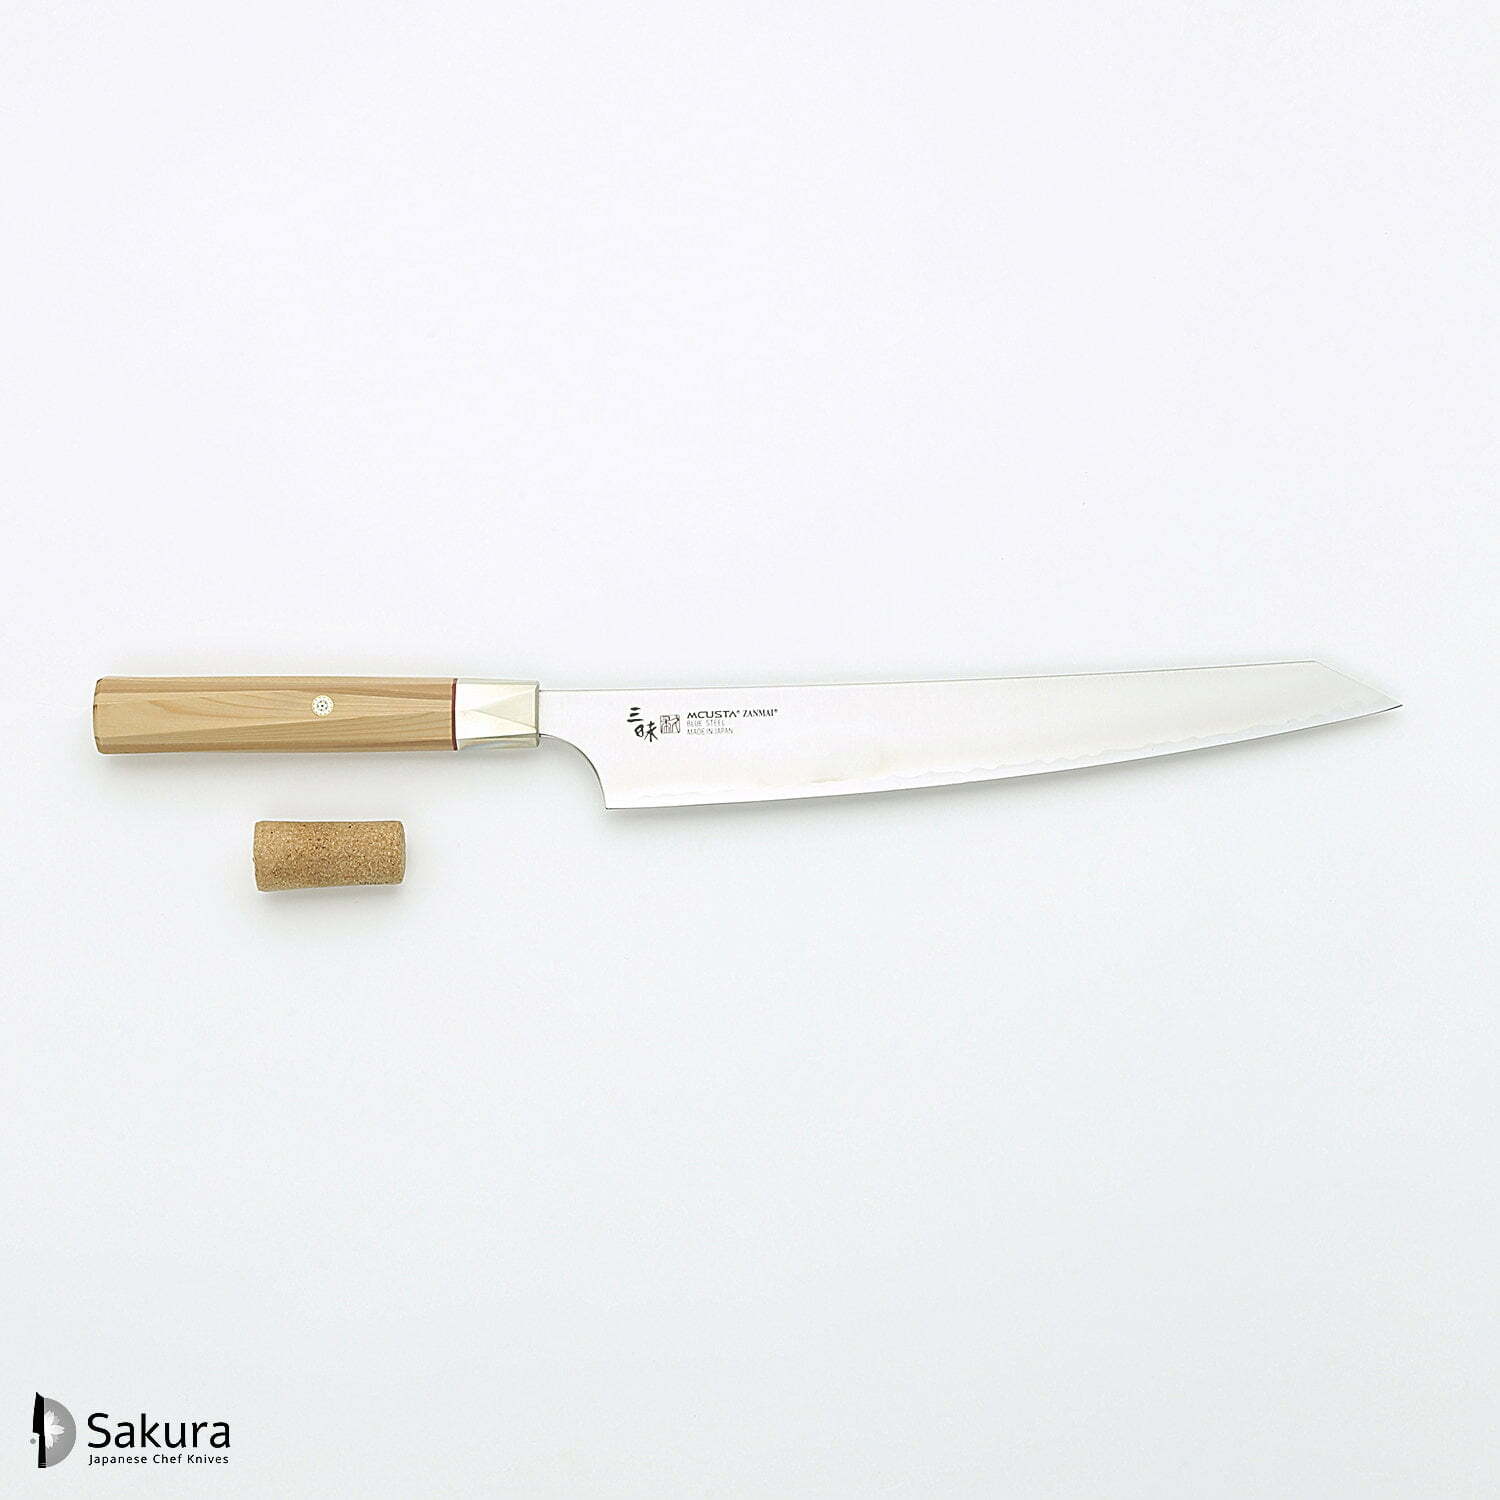 סכין חיתוך ופריסת בשר סוּגִּ’יהִיקִי 270מ״מ מחושלת בעבודת יד 3 שכבות: פלדת פחמן יפנית מתקדמת מסוג Aogami Super עטופה פלדת אל-חלד גימור מט מלוטש מקוסטה זאנמאיי יפן ZBX-5010B (Copy)